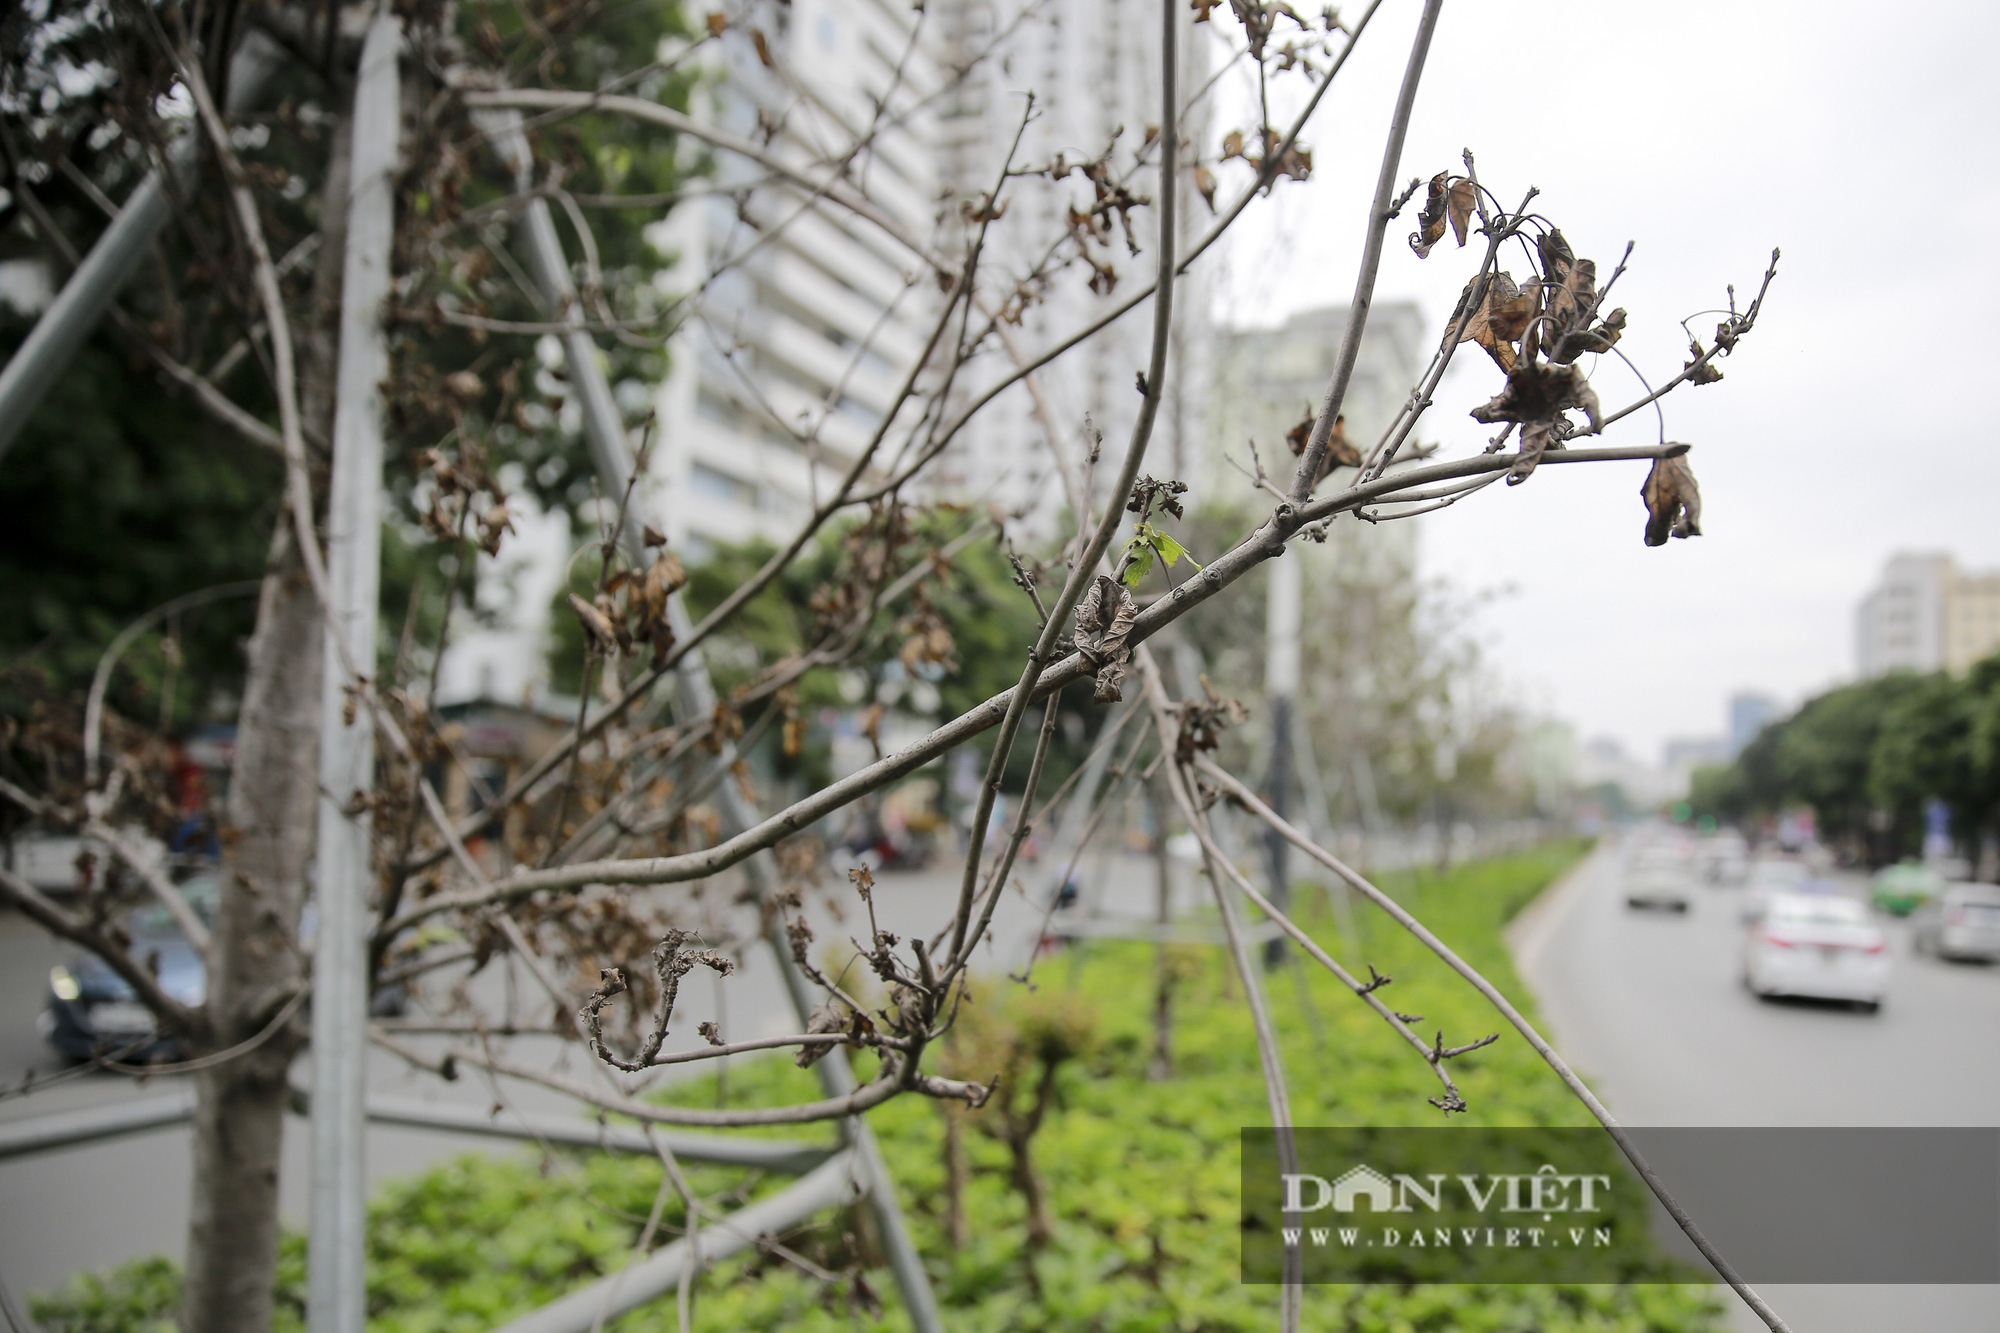 Xót xa nhìn hàng cây phong lá đỏ chết khô trên đường phố Hà Nội - Ảnh 9.